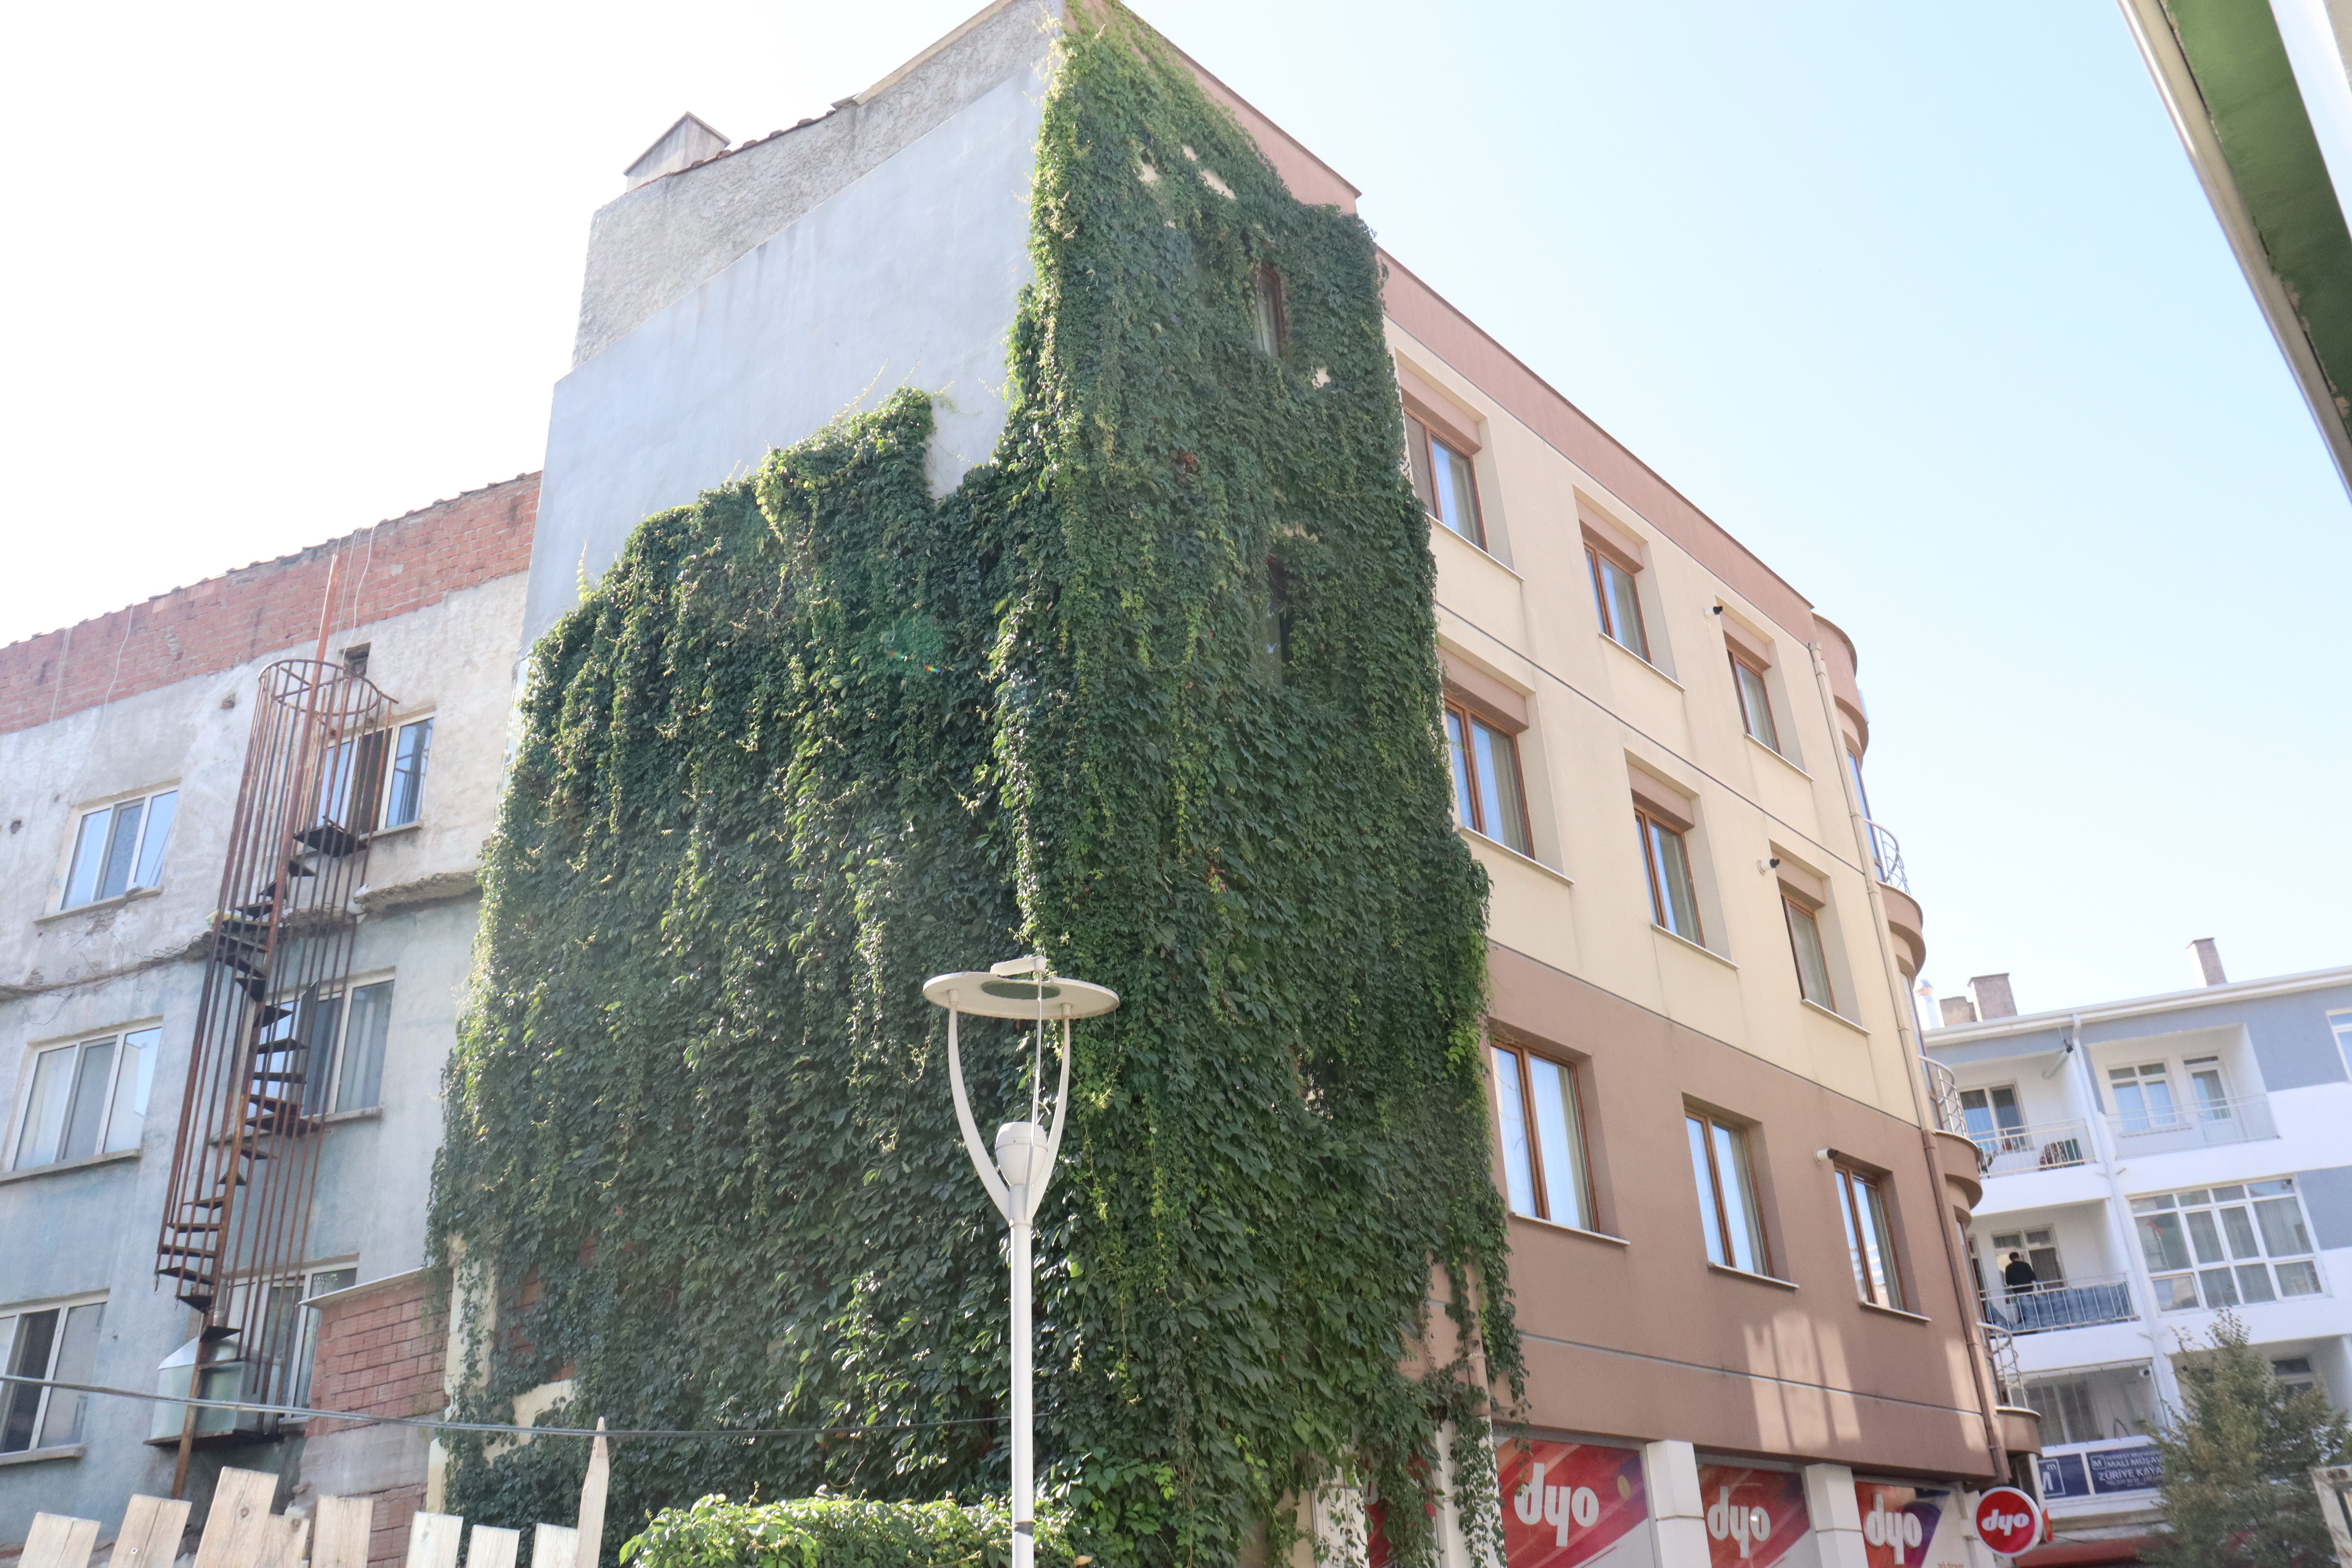 Odunpazarı İlçesi İstiklal Mahallesi Karagül Sokak'ta bulunan bir apartmanın üzerini kaplayan sarmaşıklar dikkat çekiyor.